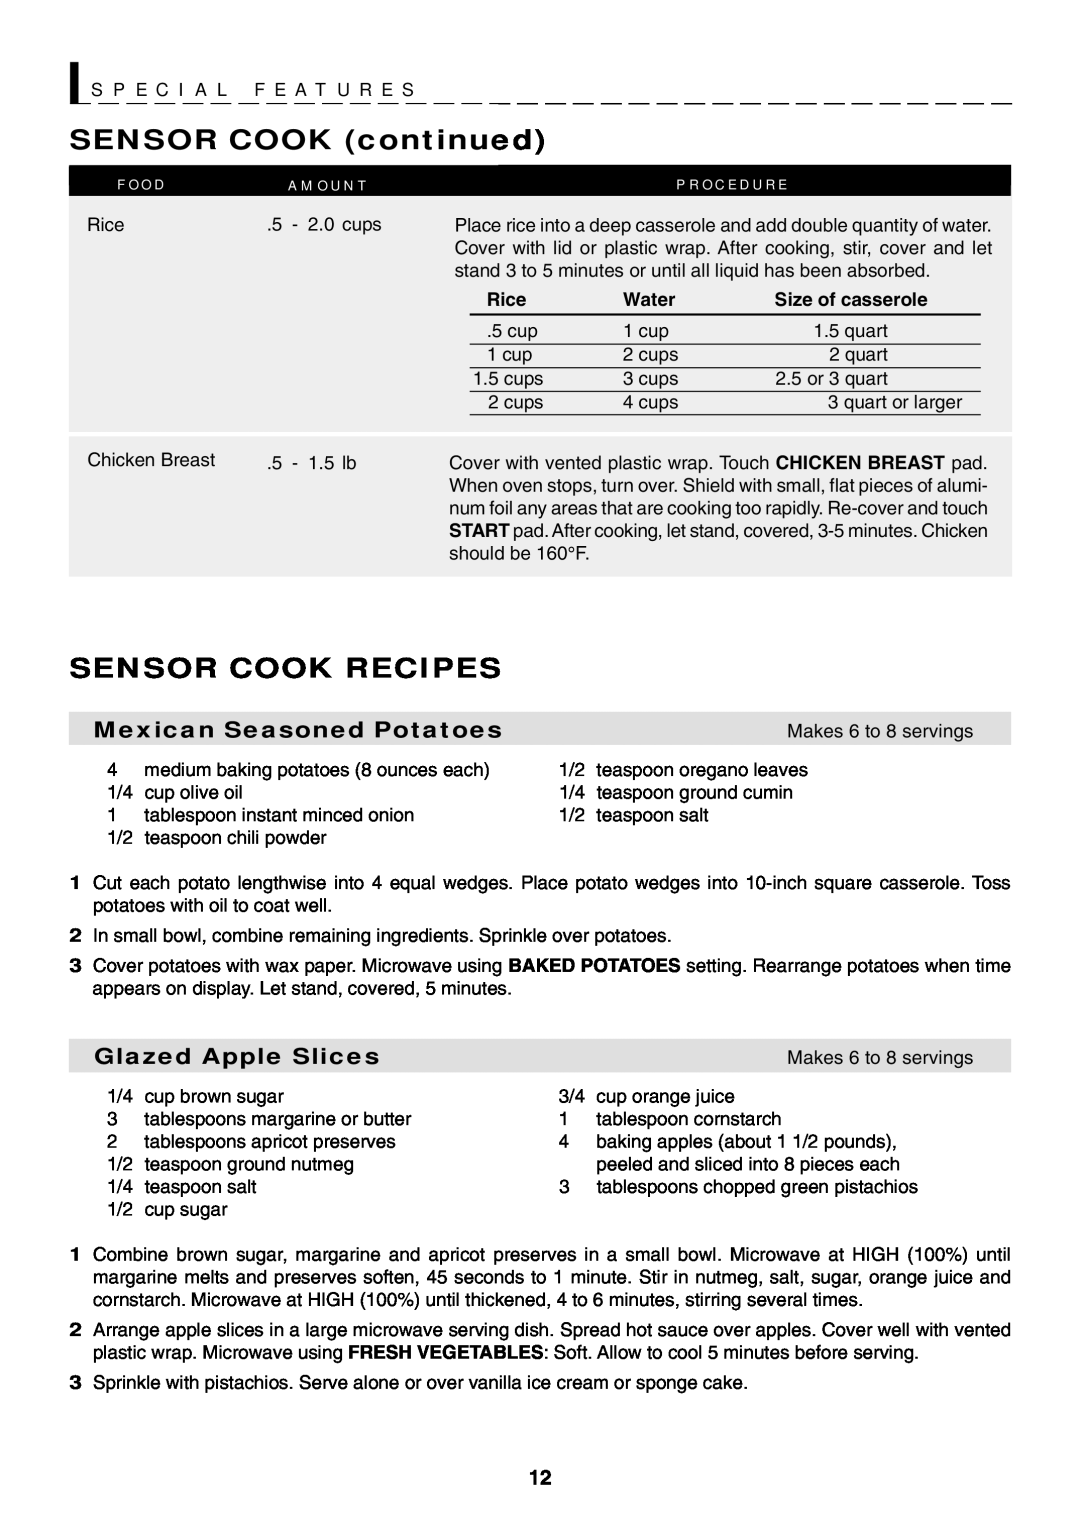 Sharp R-319F SENSOR COOK continued, Sensor Cook Recipes, S P E C I A L F E A T U R E S, Mexican Seasoned Potatoes, Rice 